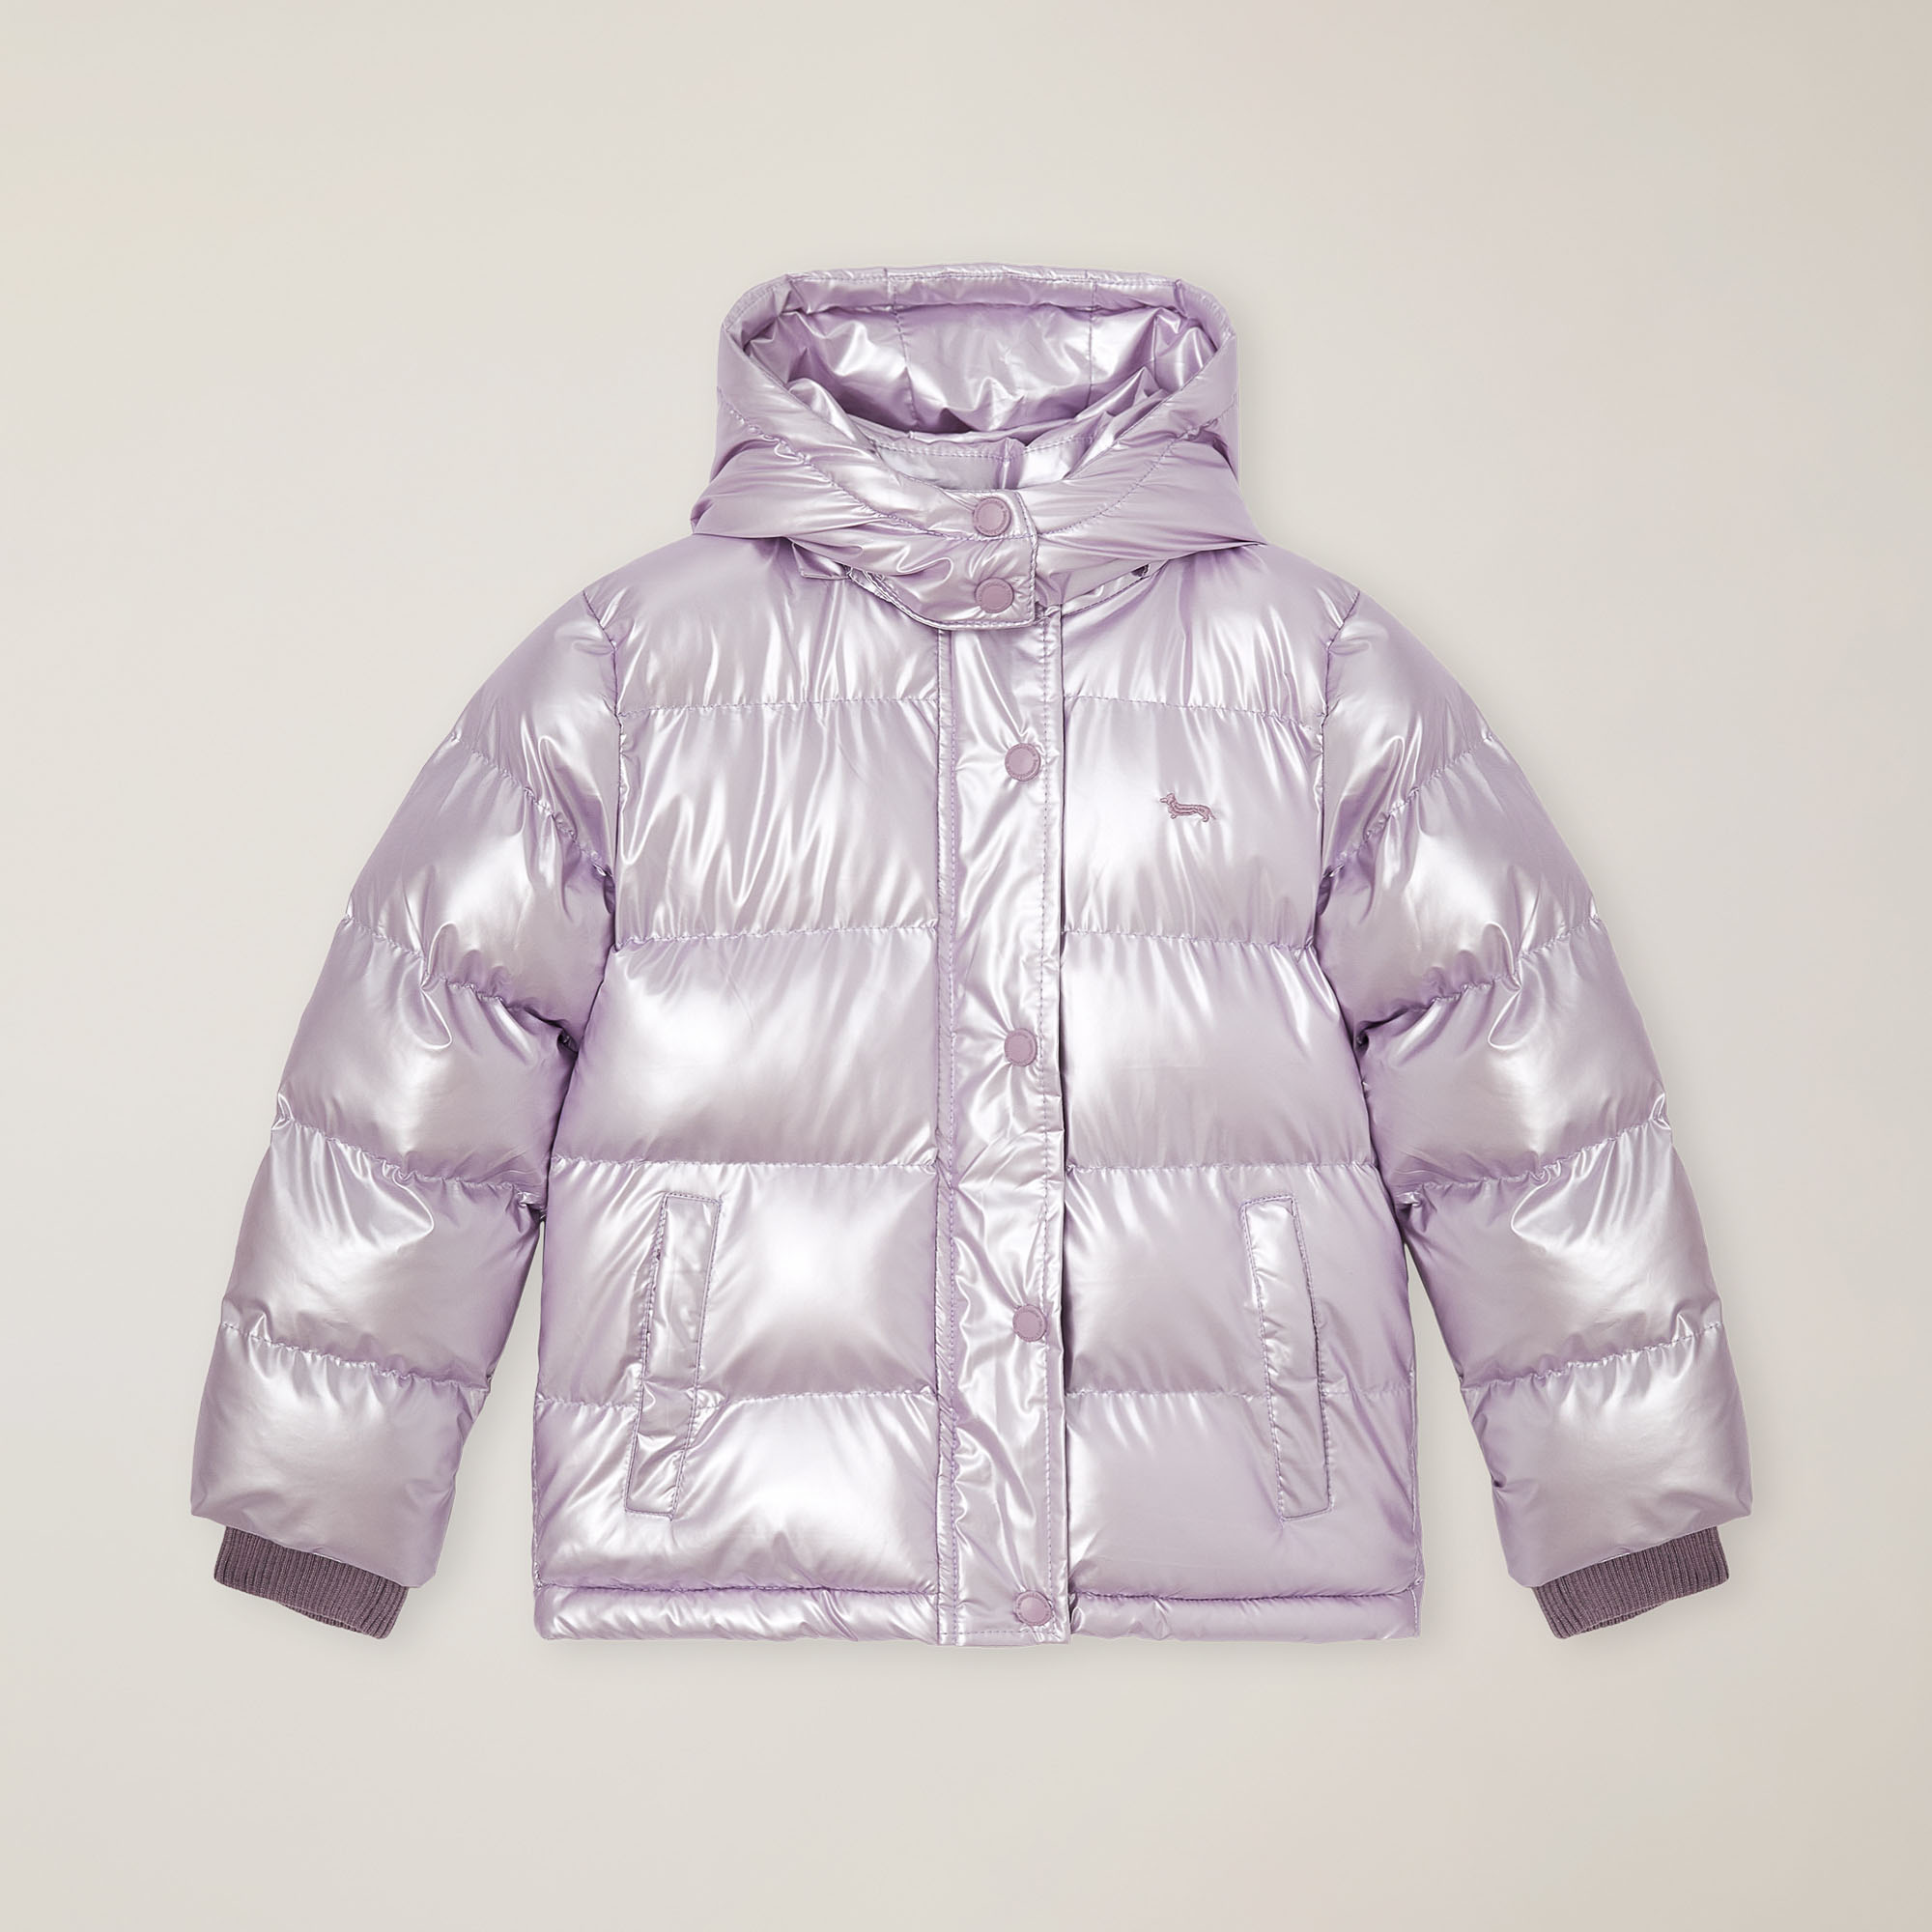 Nylon jacket with hood, Lilac, large